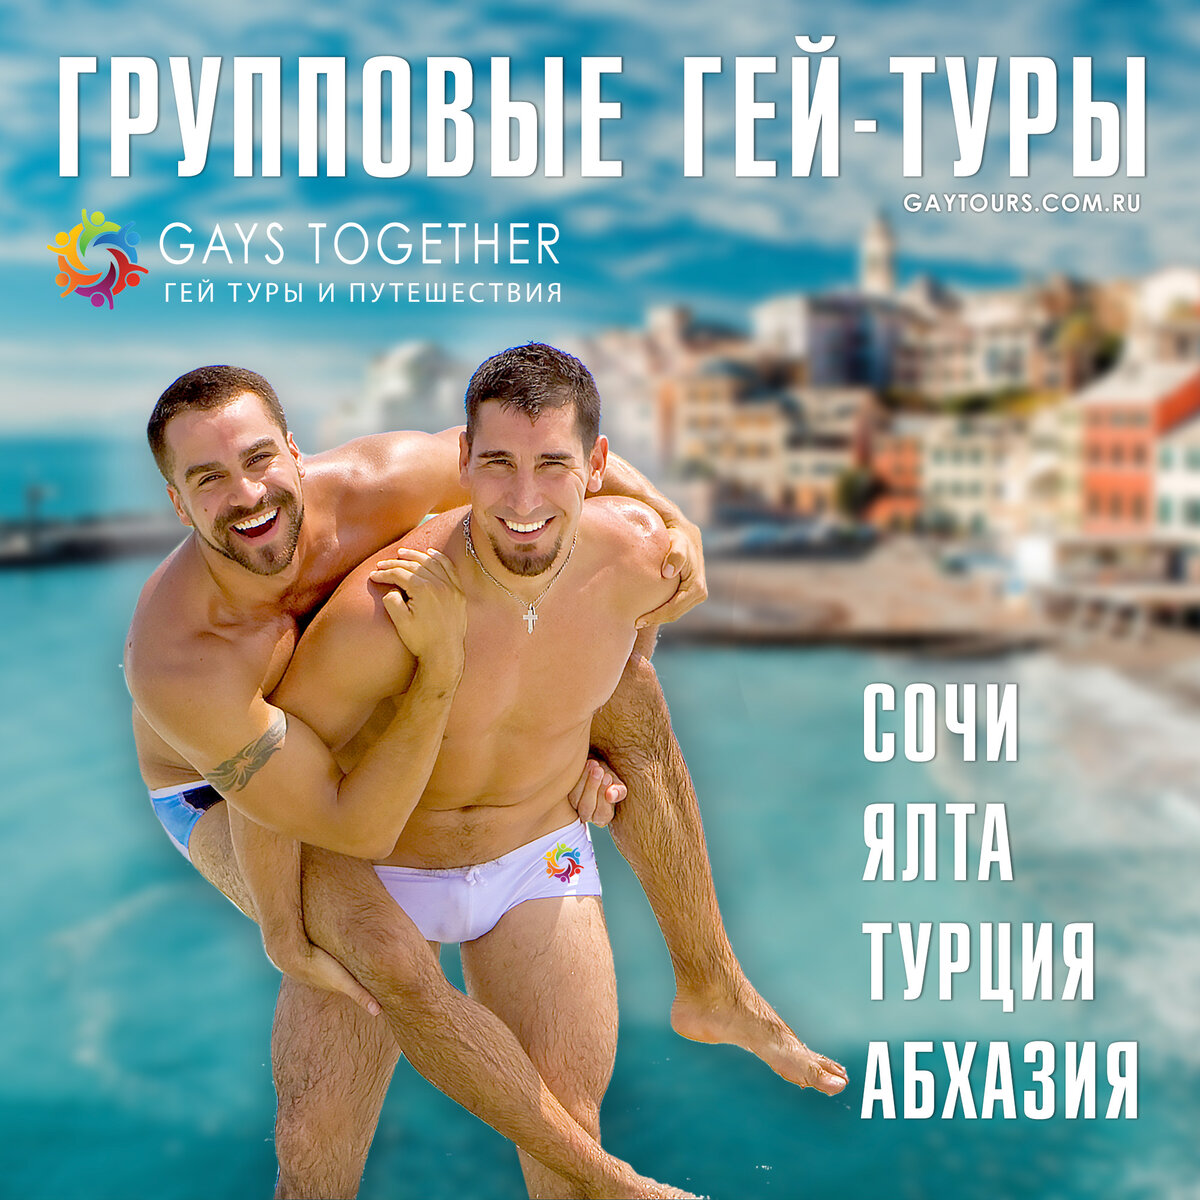 lavandasport.ru - Гей туризм в России. Что выбрать для отдыха российскому гею?!